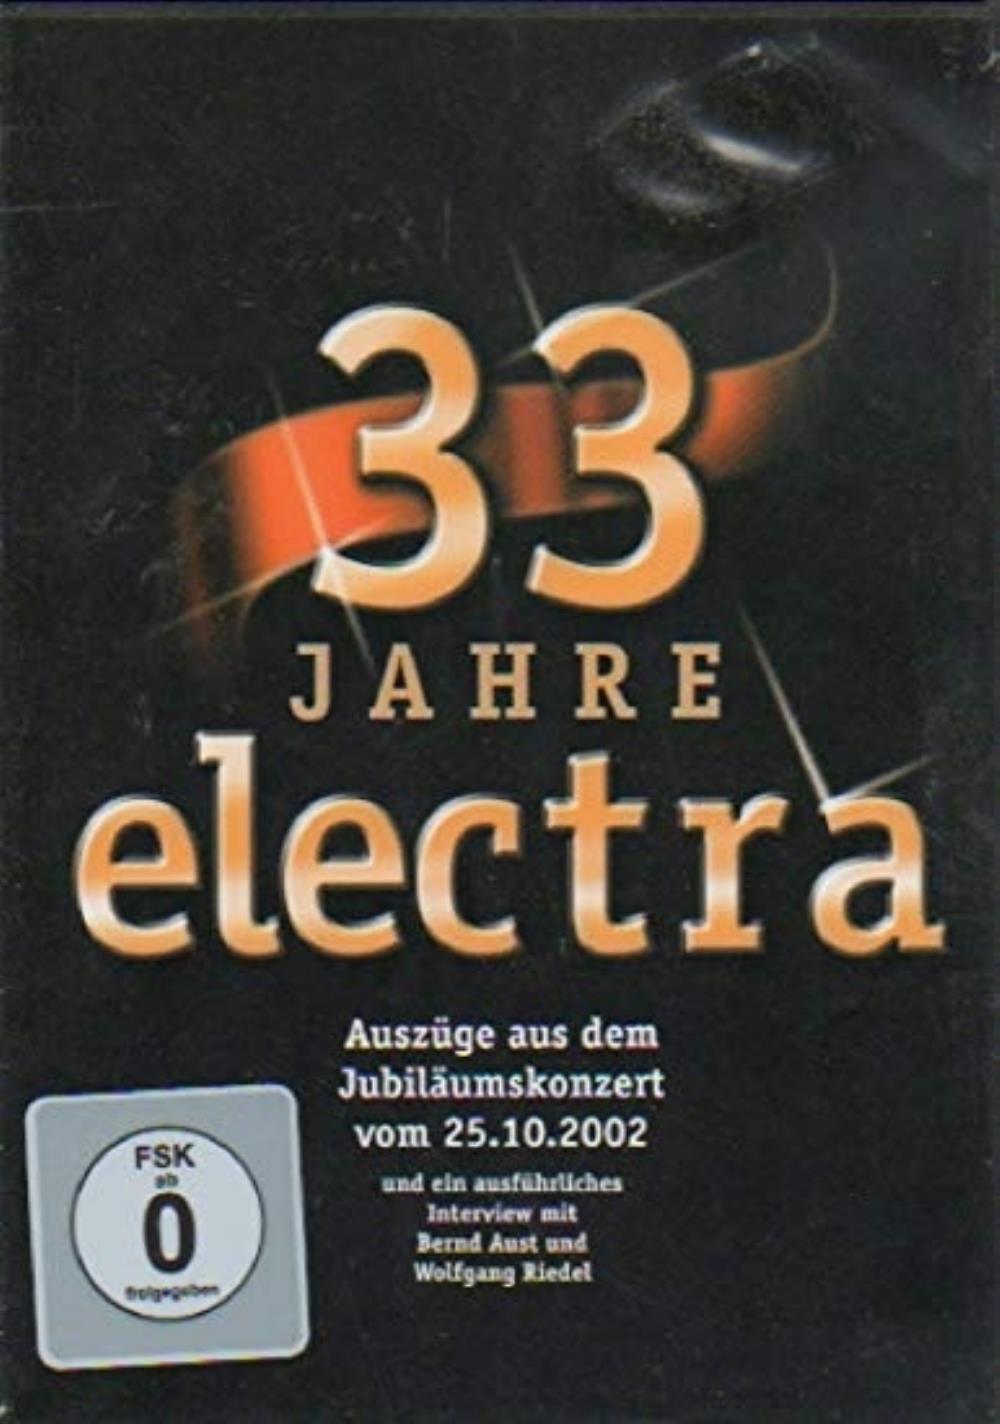 Electra 33 Jahre Electra - Die Konzert album cover